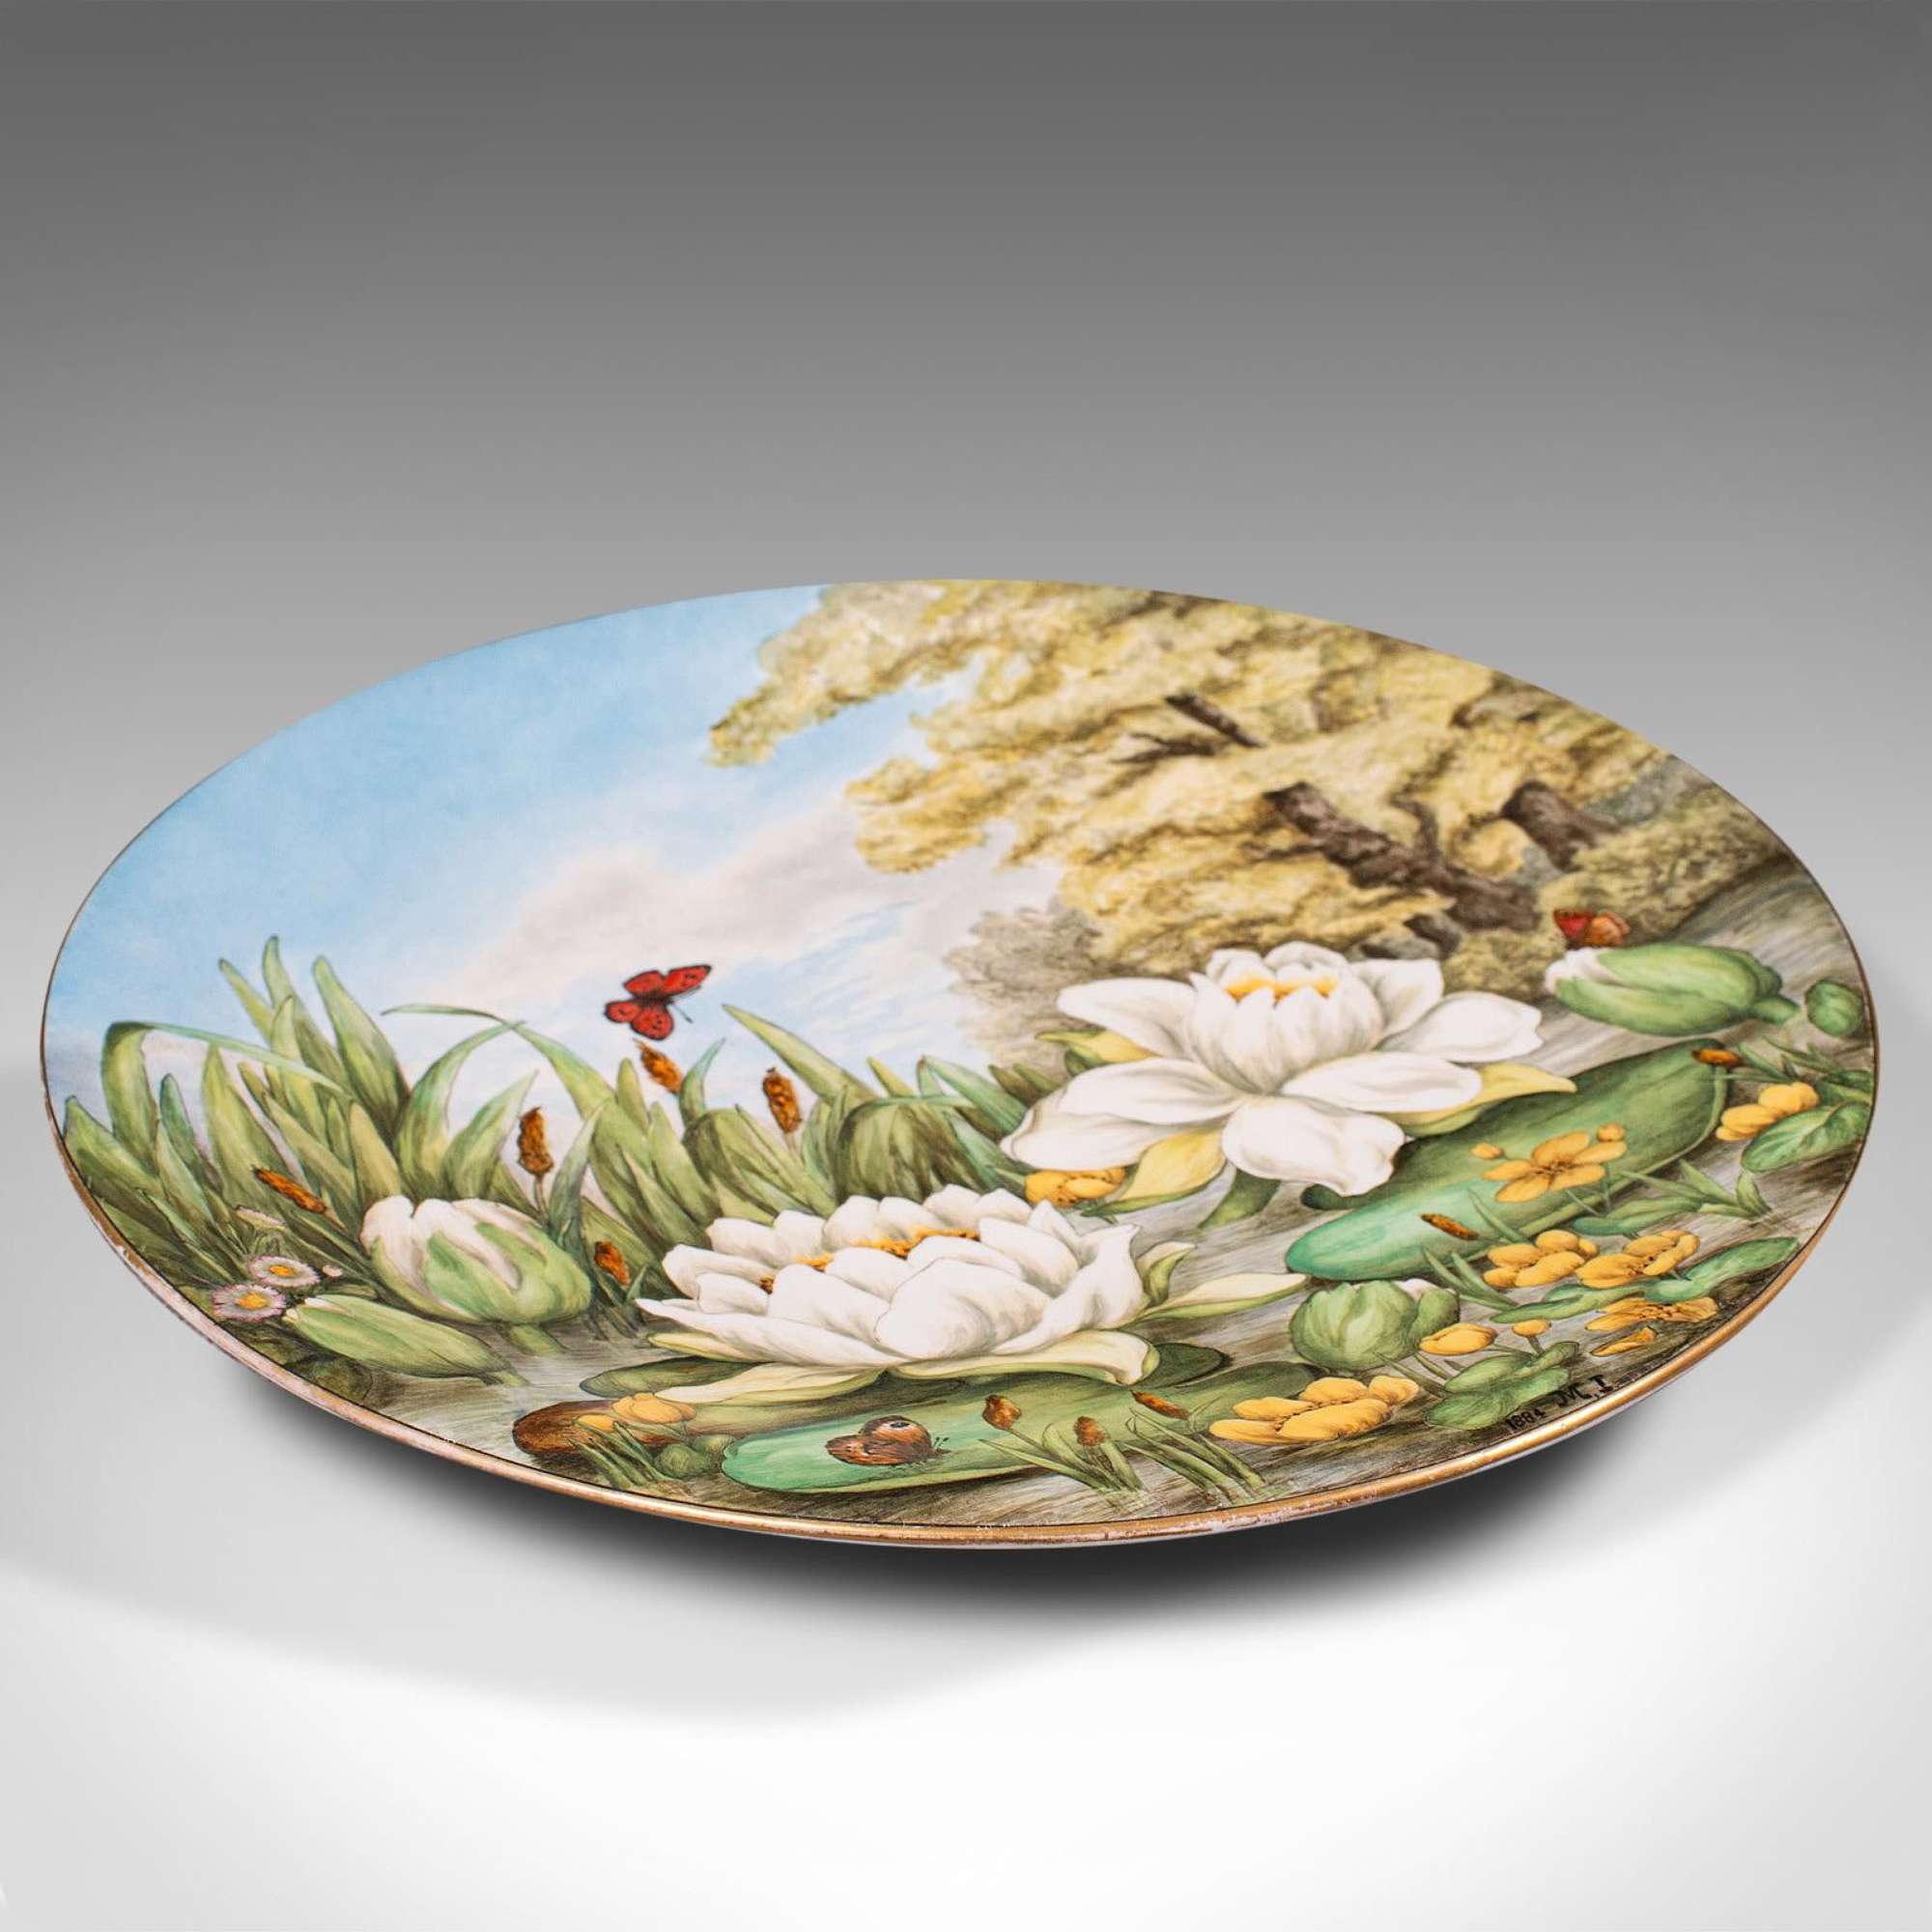 Antique Decorative Charger Plate, English, Ceramic, Dish, Art Nouveau, Victorian